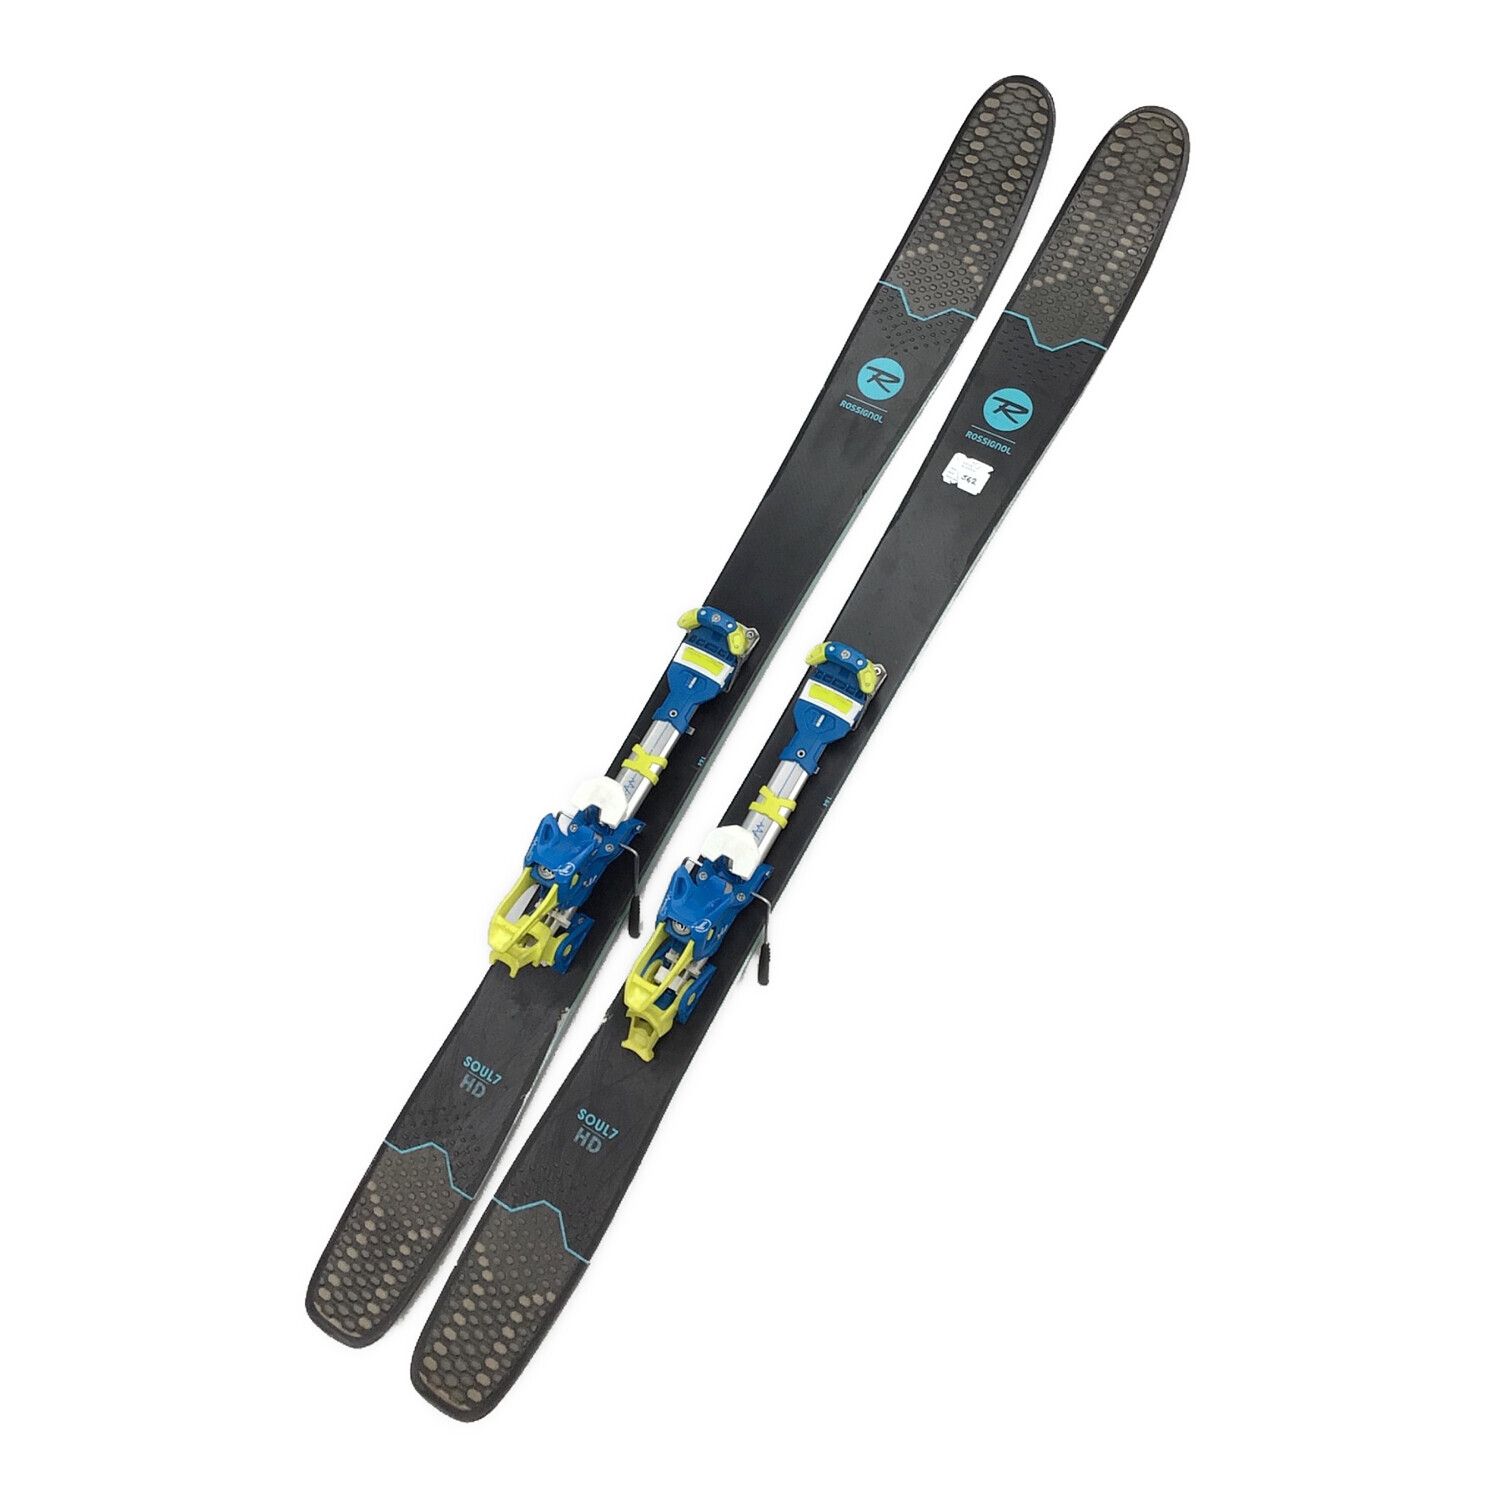 ワンシーズン使用しましたロシニョール バックカントリー用スキー - スキー